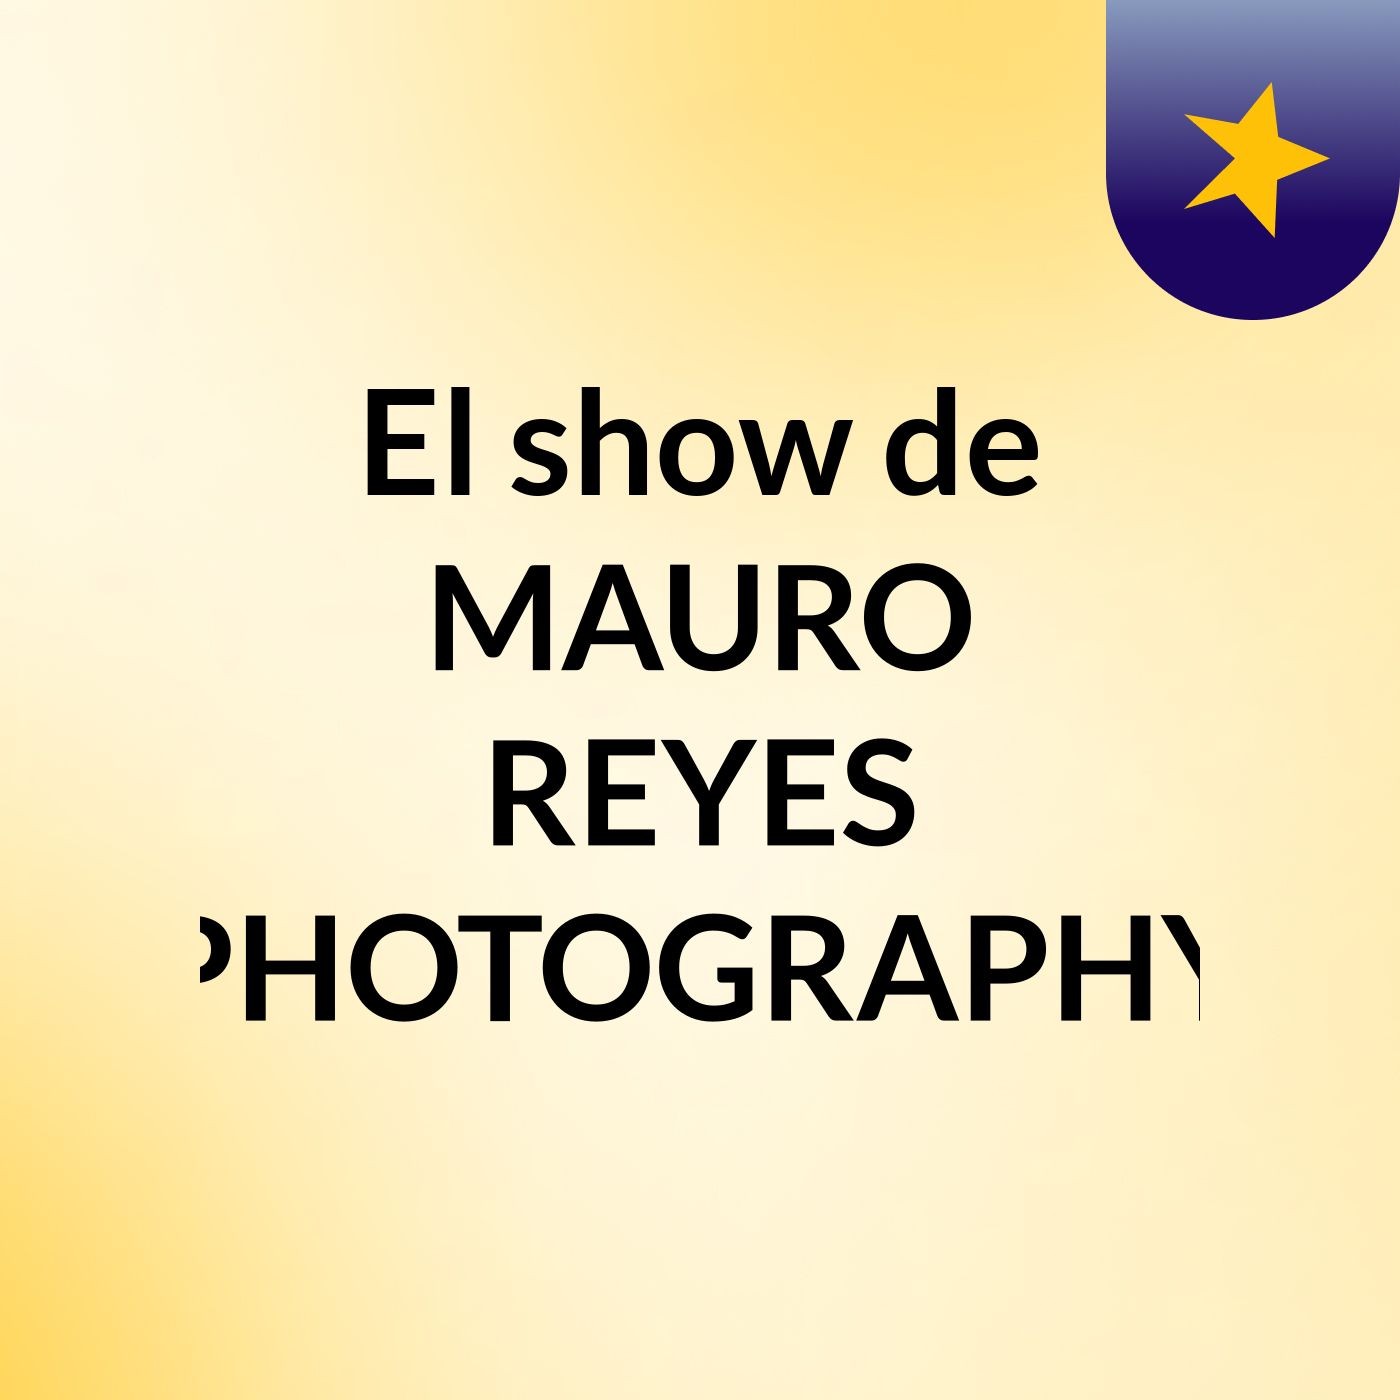 El show de MAURO REYES PHOTOGRAPHY